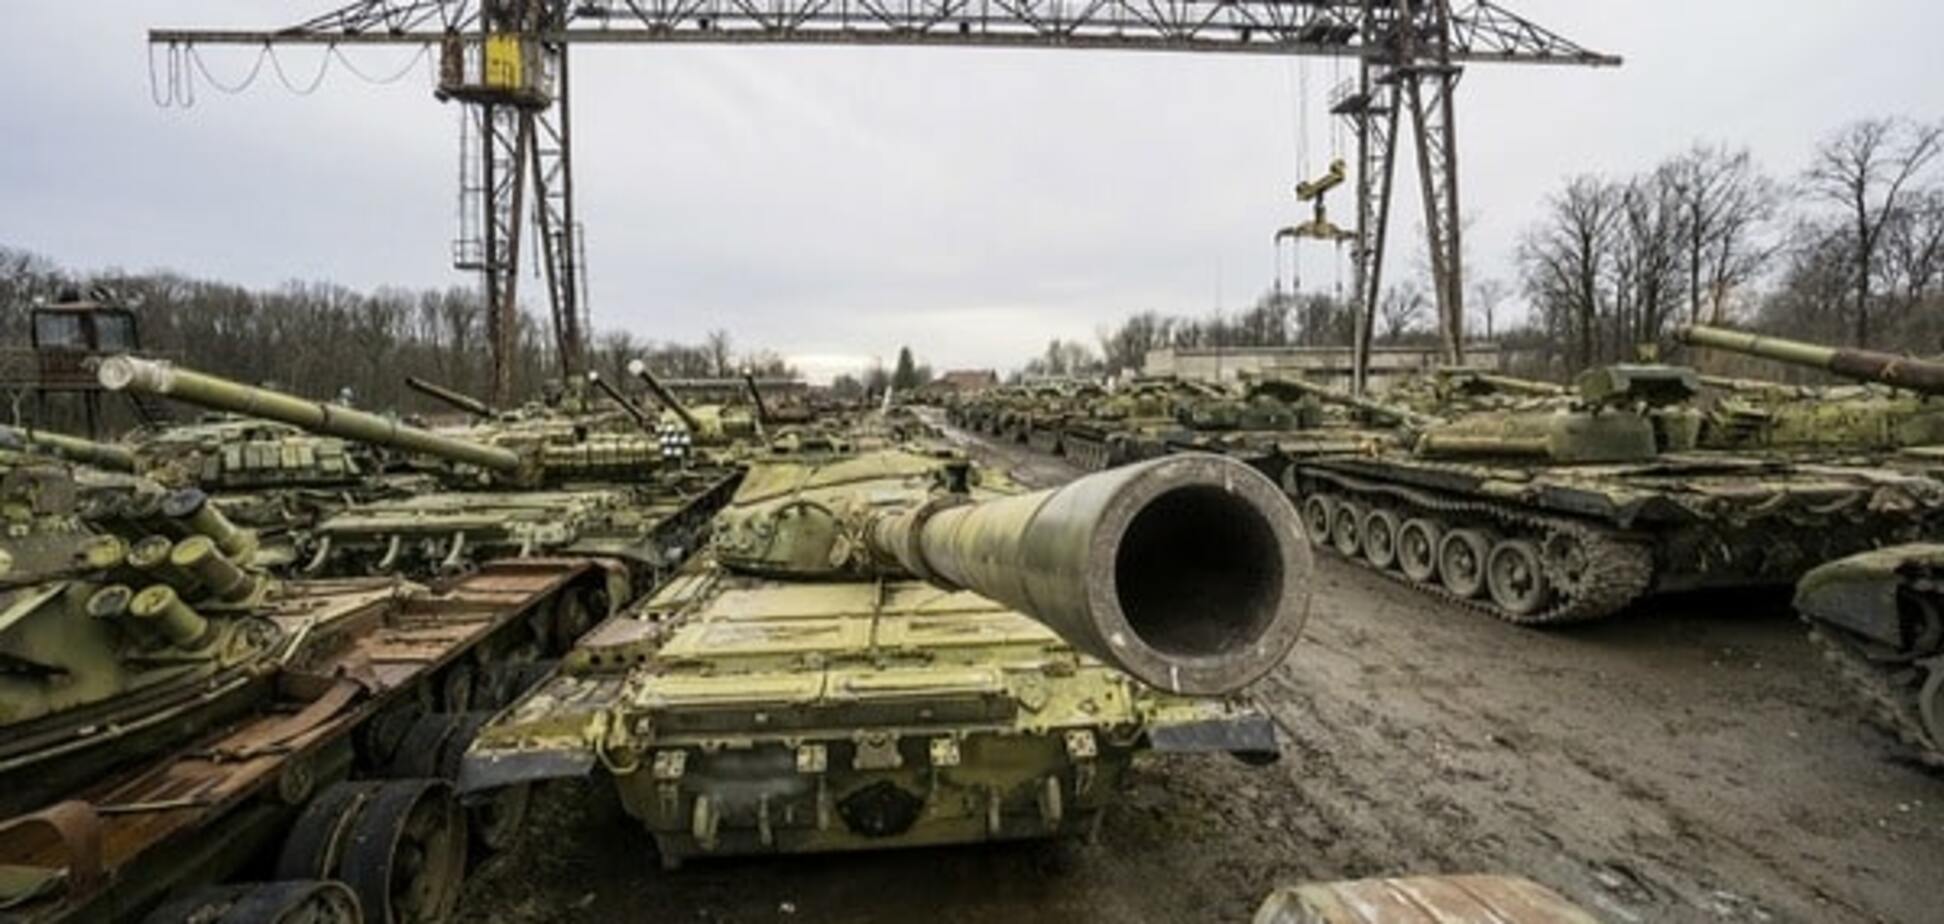 Україна 'обростає бронею': опубліковано фоторепортаж з бронетанкового заводу